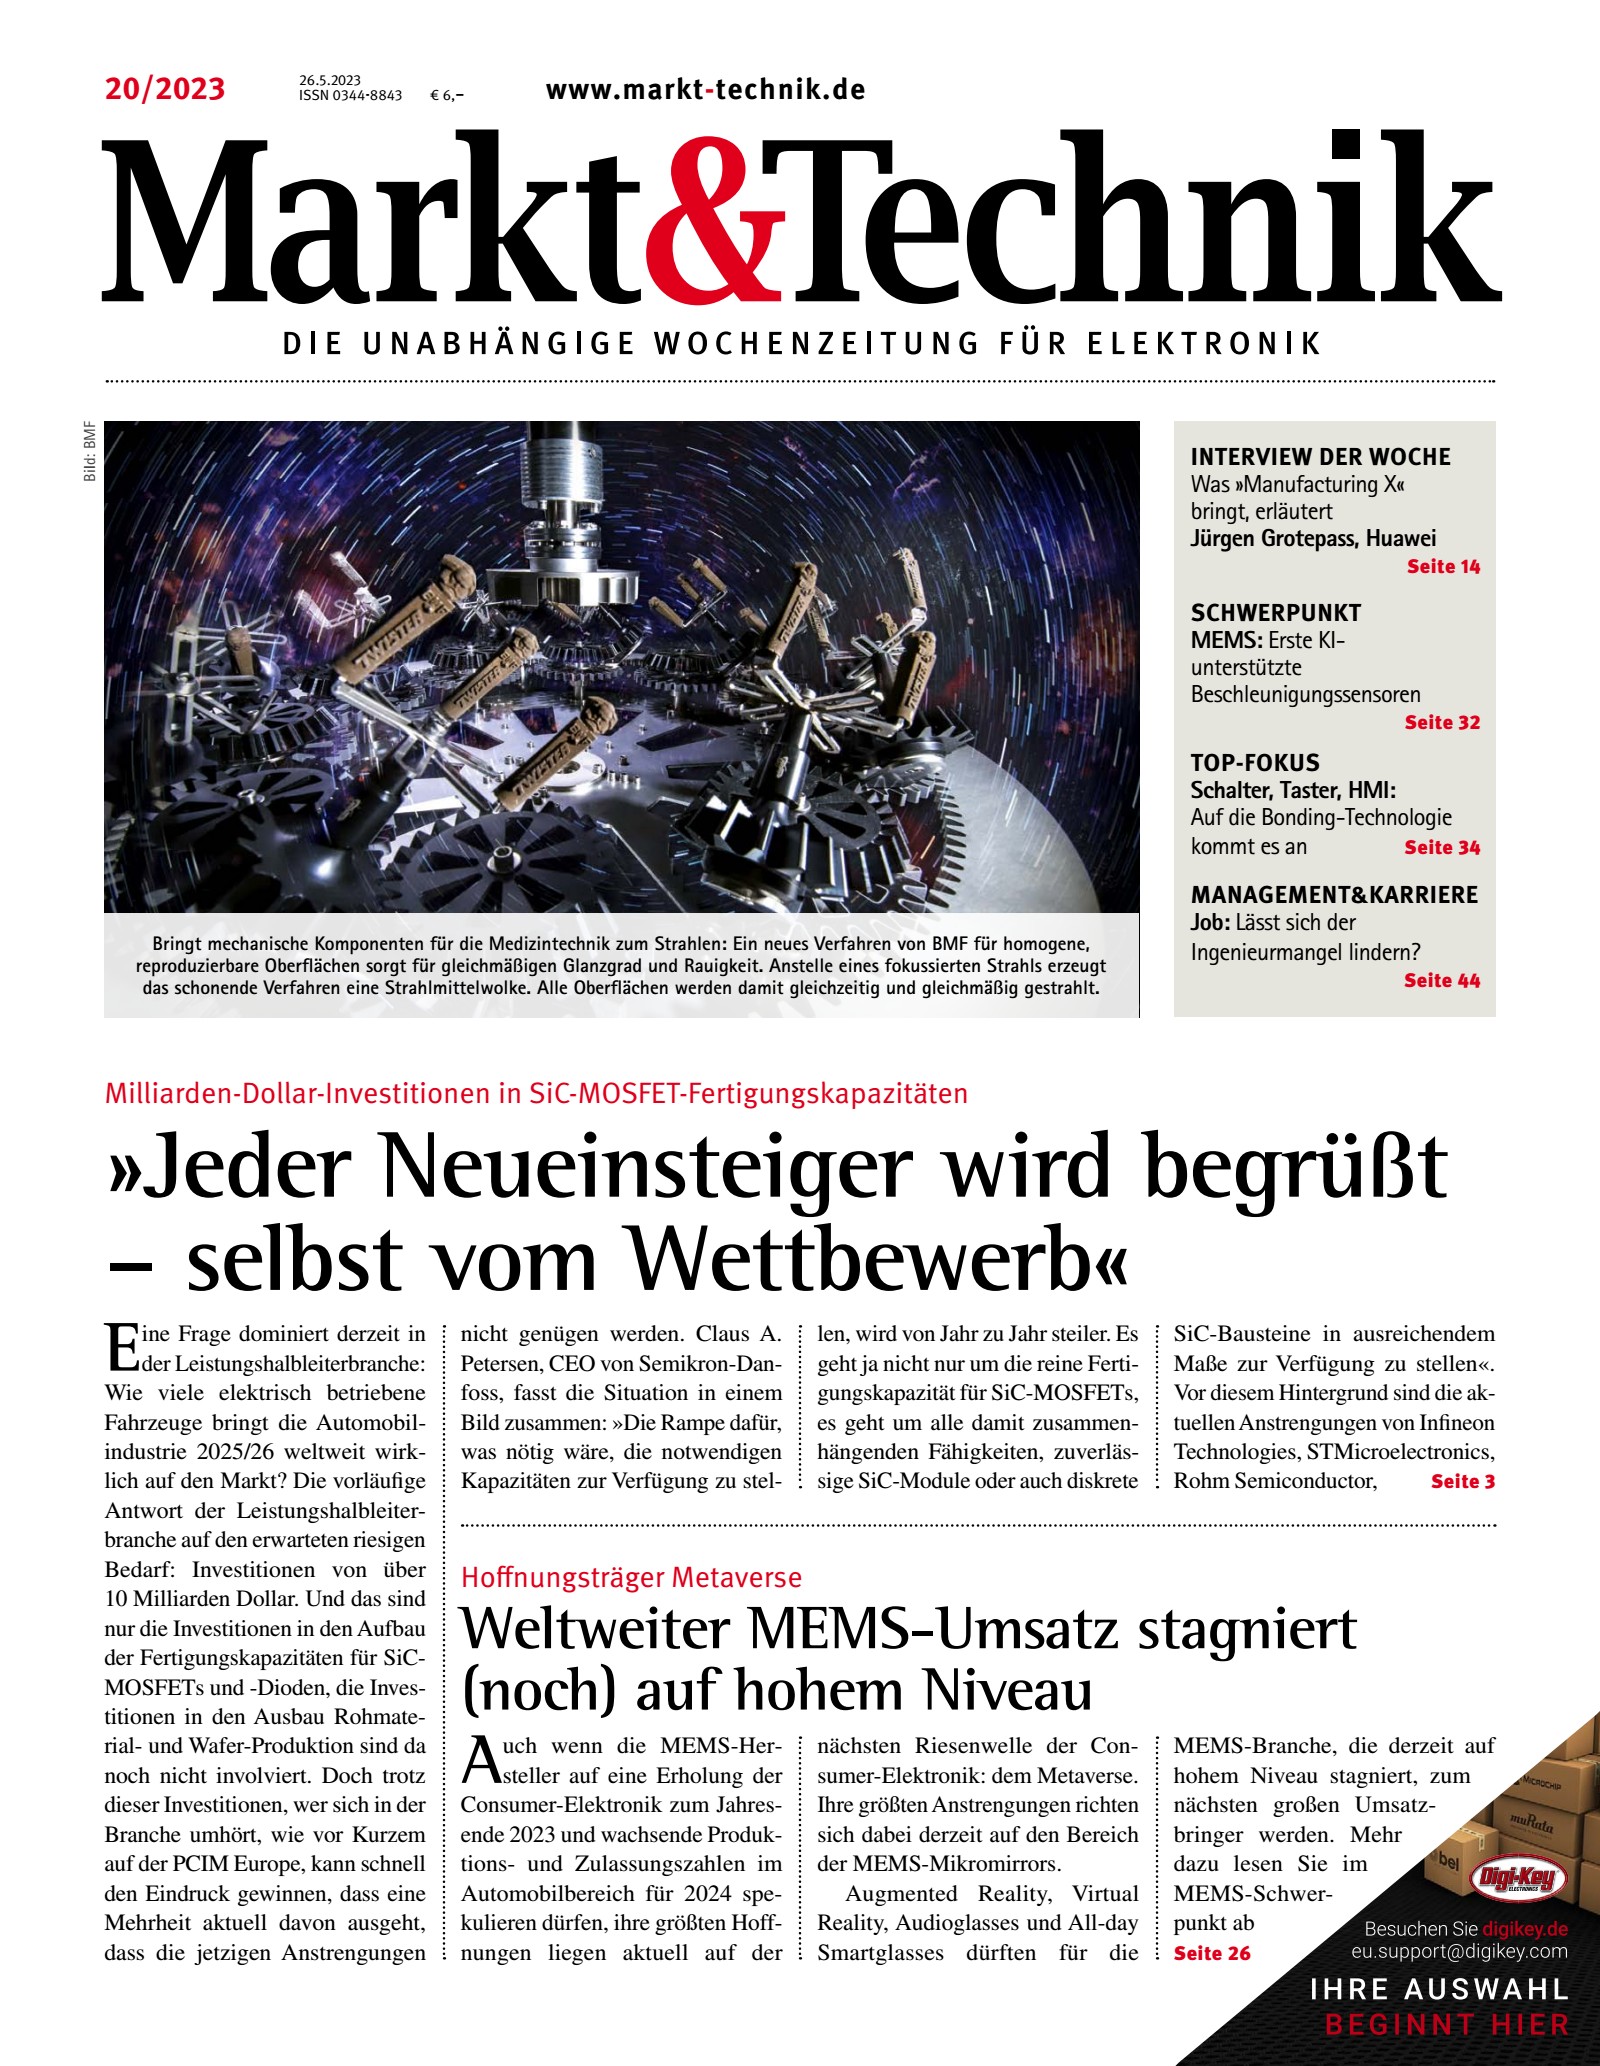 Markt&Technik 0020/2023 Digital